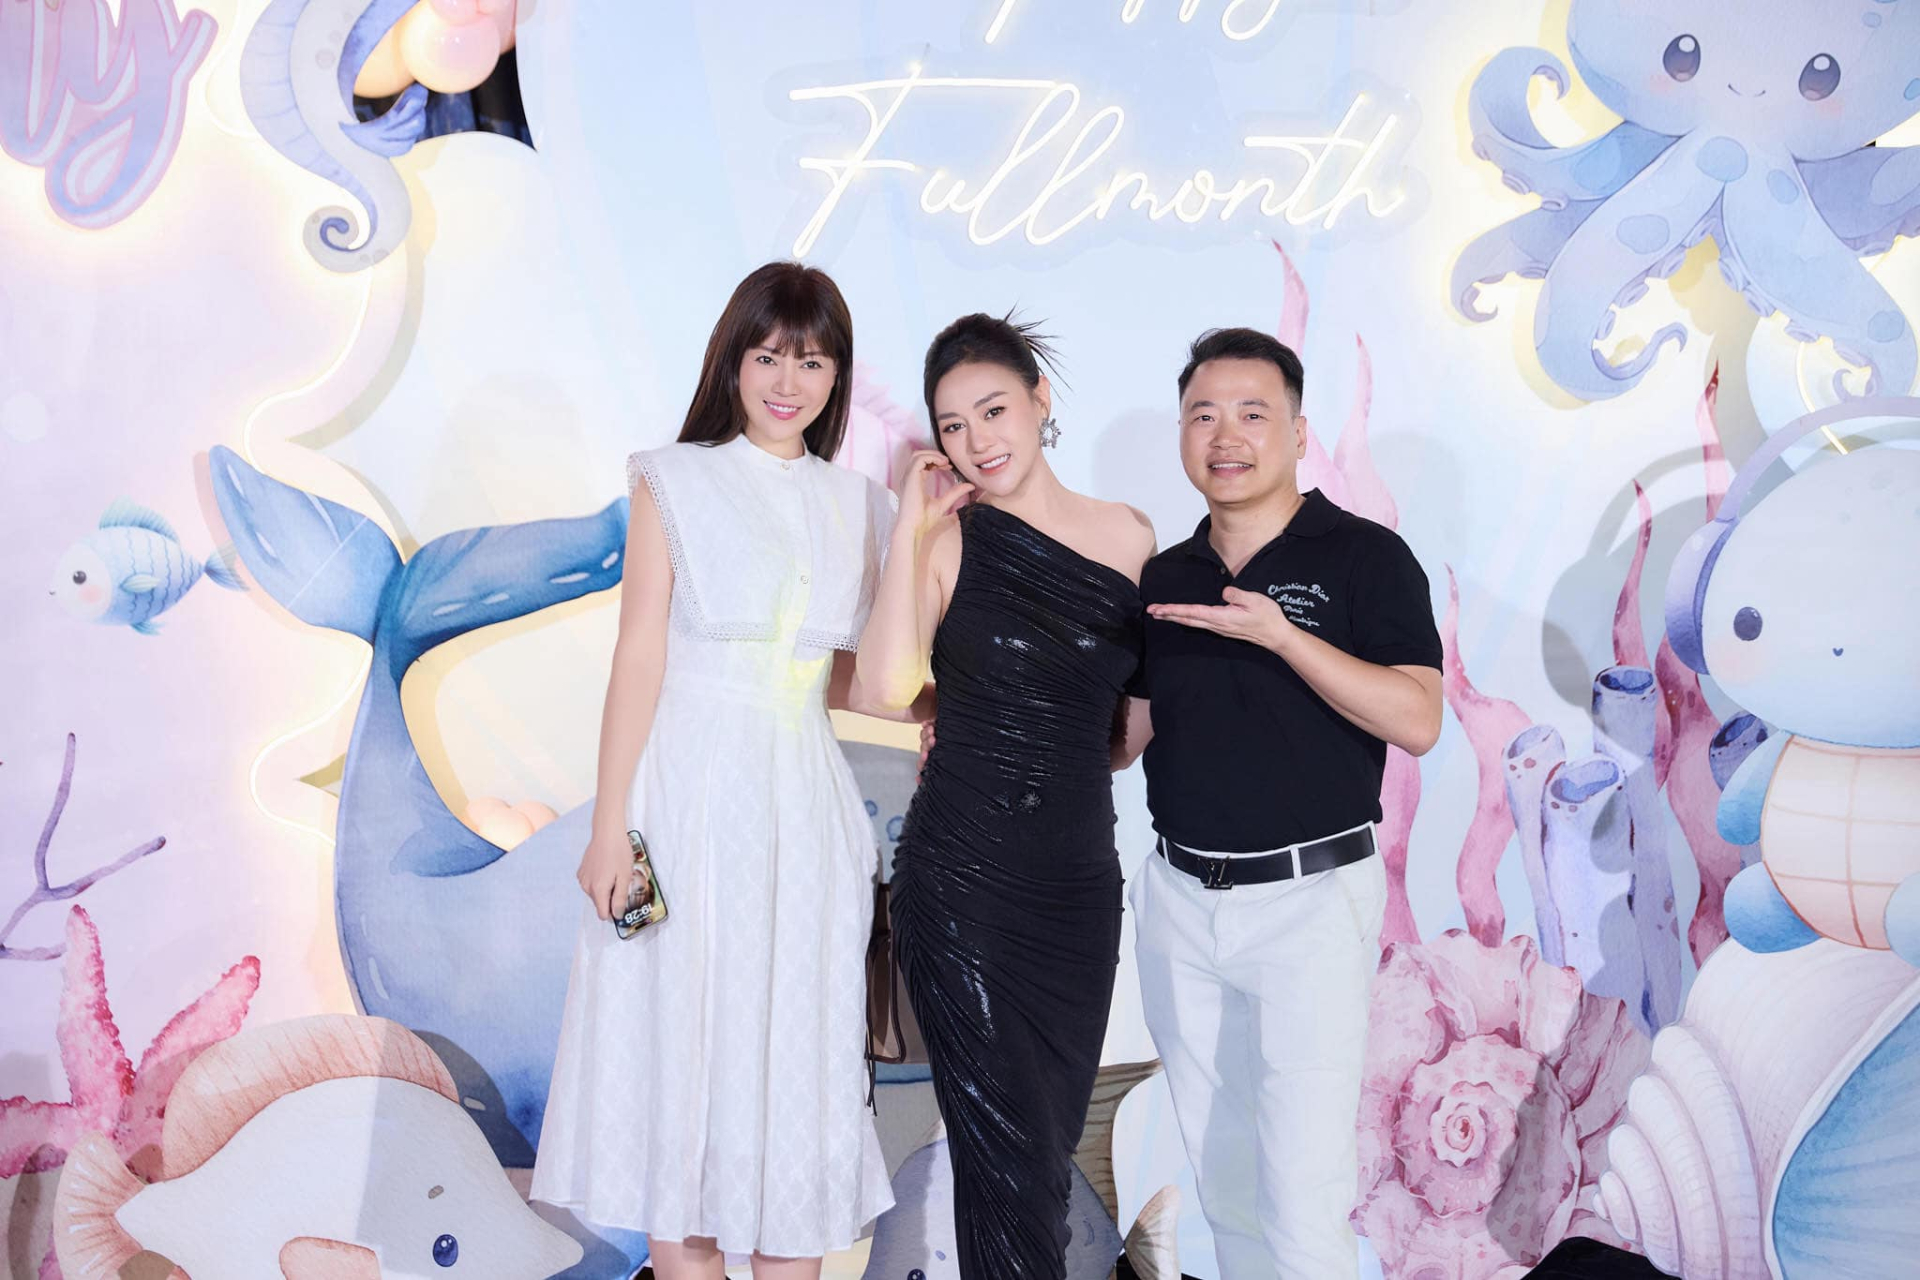 Diễn viên Phương Oanh khoe dáng bên Shark Bình trong tiệc đầy tháng 2 con sinh đôi - ảnh 3